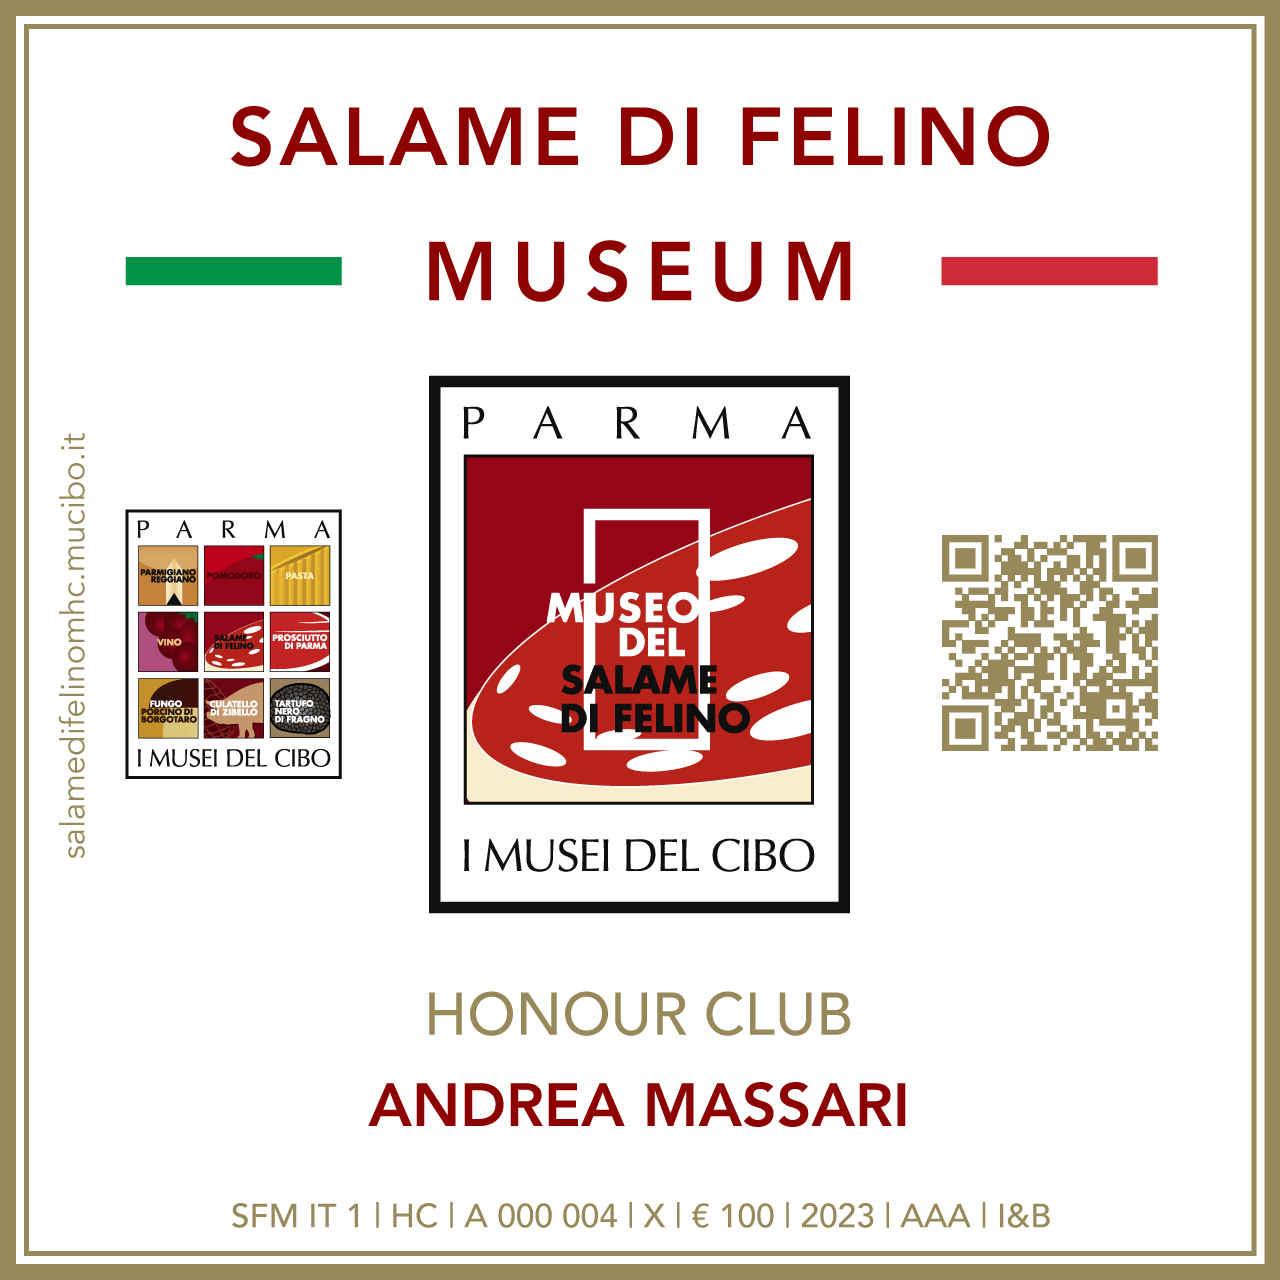 Salame di Felino Museum Honour Club - Token Id A 000 004 - ANDREA MASSARI